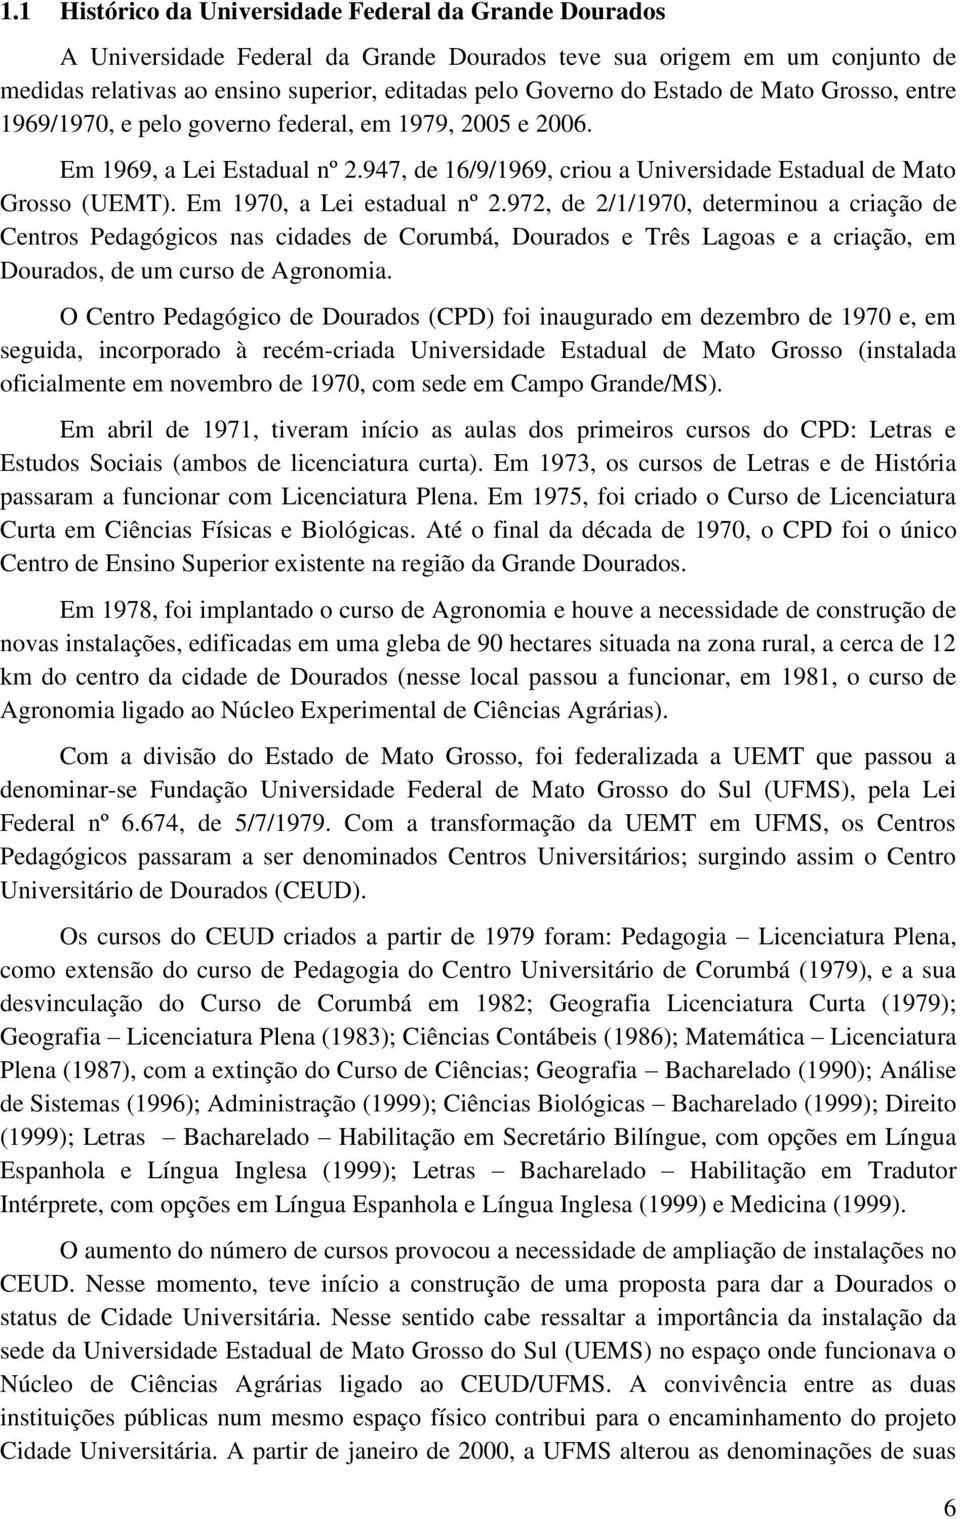 Em 1970, a Lei estadual nº 2.972, de 2/1/1970, determinou a criação de Centros Pedagógicos nas cidades de Corumbá, Dourados e Três Lagoas e a criação, em Dourados, de um curso de Agronomia.